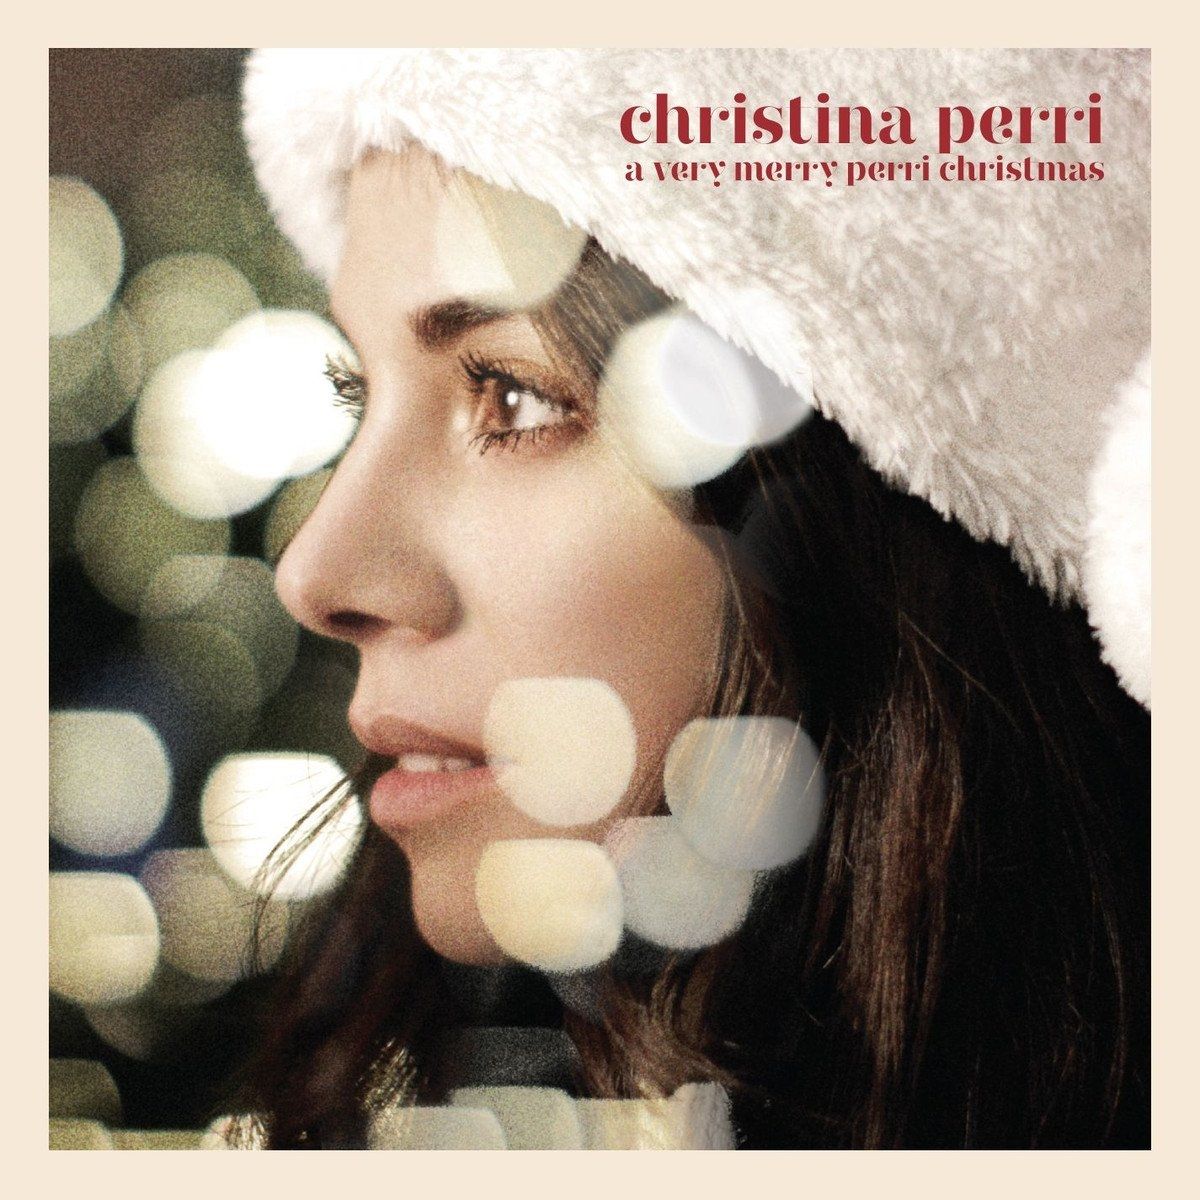 Imagem do álbum A Very Merry Perri Christmas do(a) artista Christina Perri